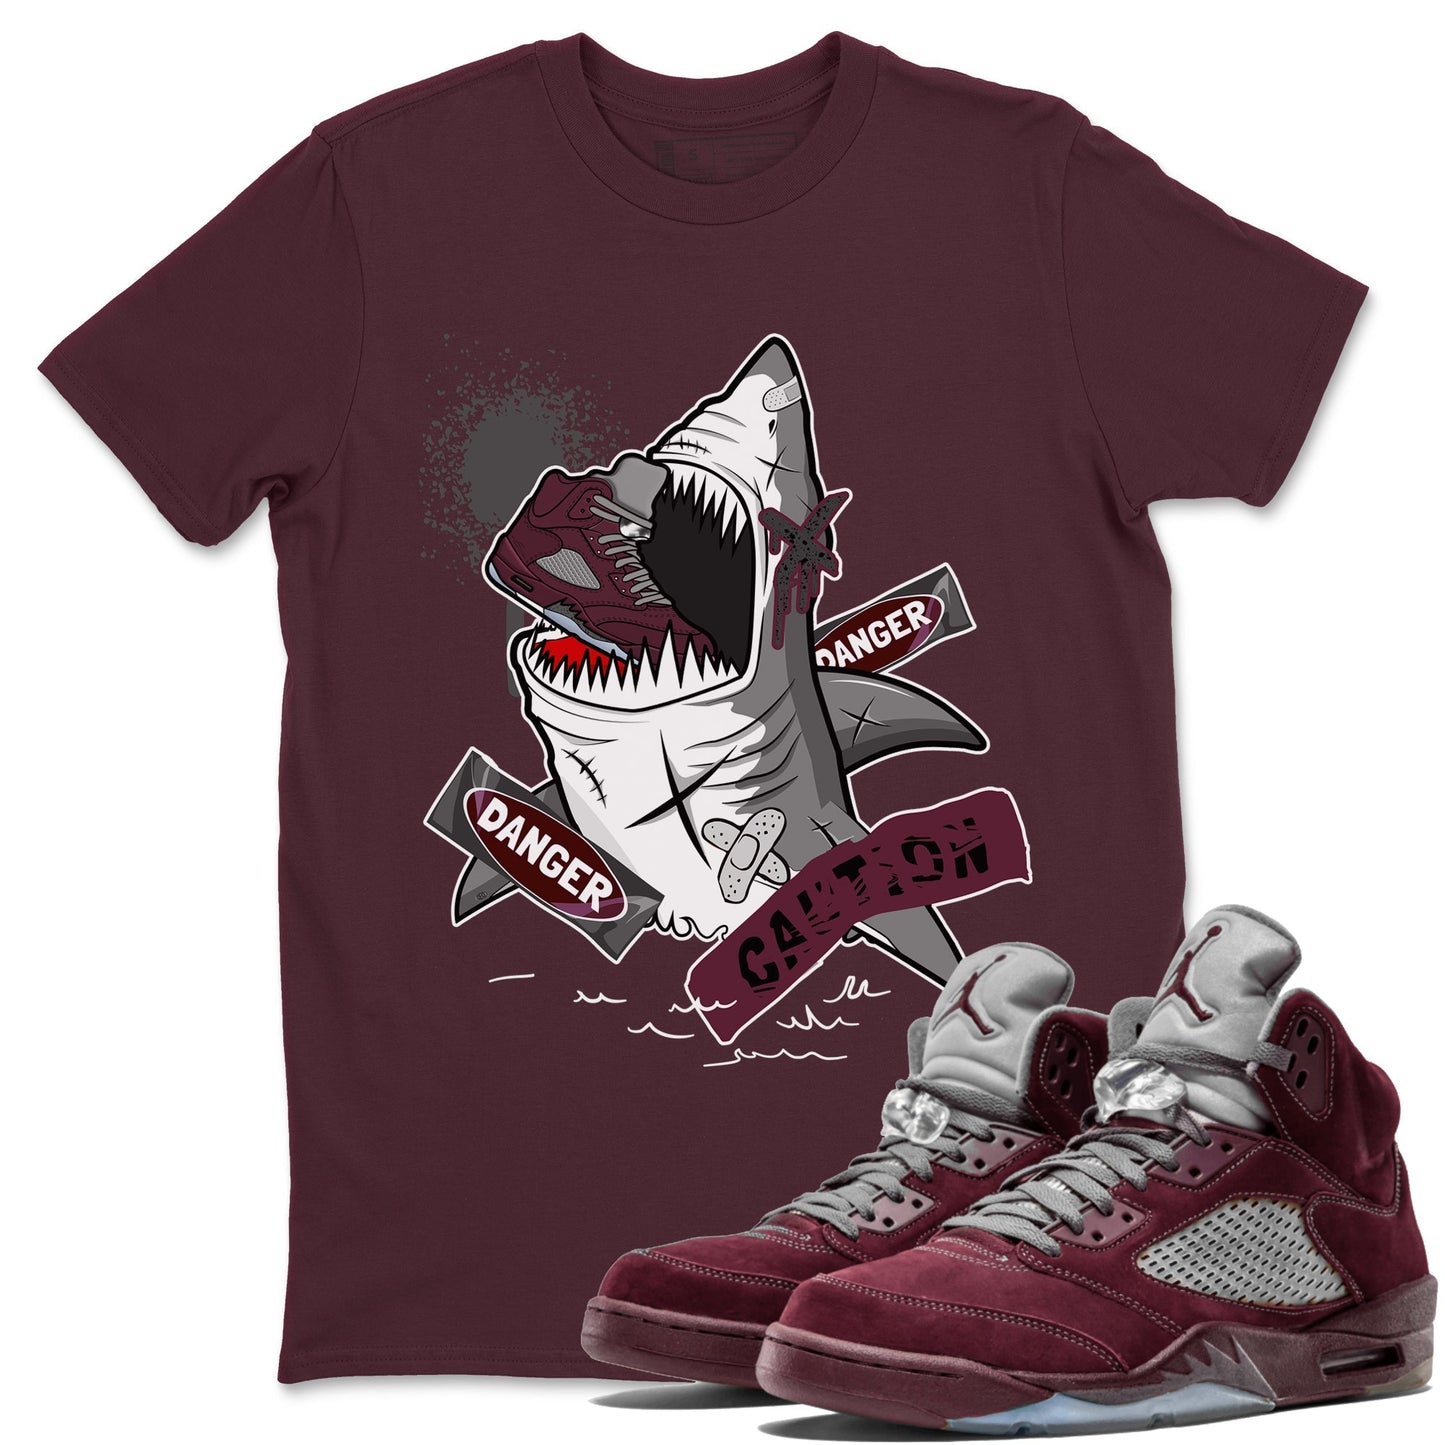 5s Burgundy shirt to match jordans Dangerous Shark Streetwear Sneaker Shirt Air Jordan 5 Burgundy Drip Gear Zone Sneaker Matching Clothing Unisex Maroon 1 T-Shirt